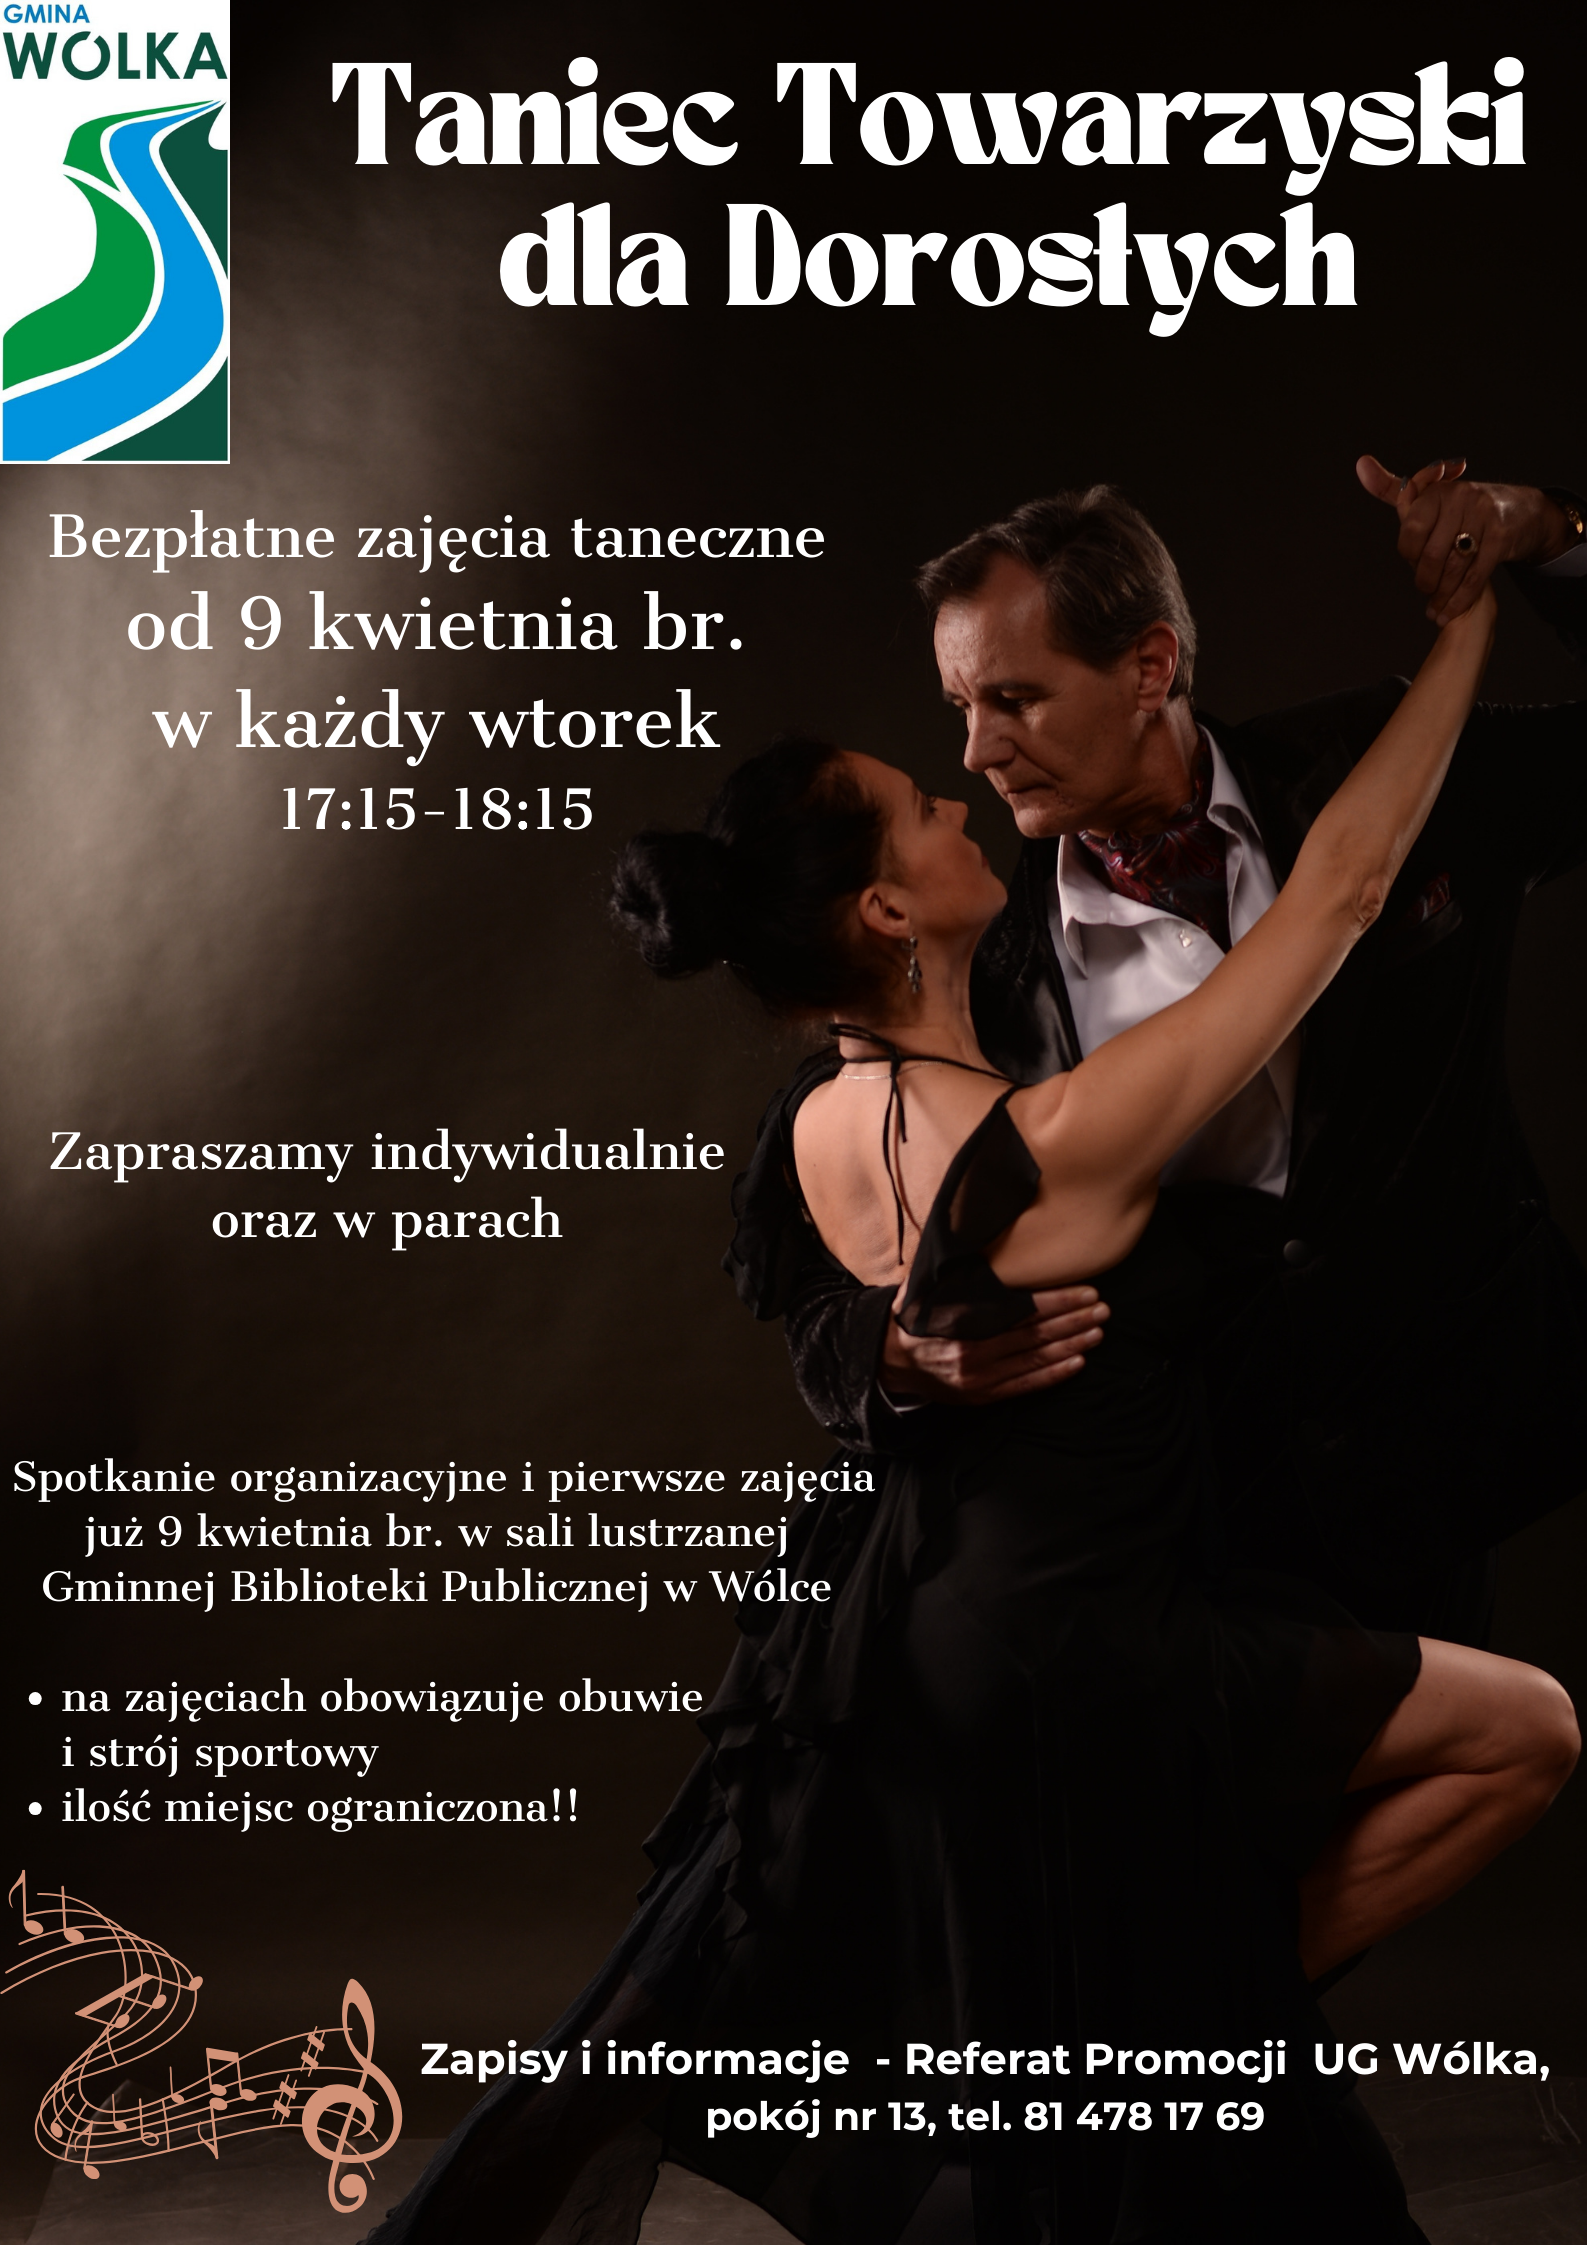 Plakat promujący darmowe lekcje tańca towarzyskiego, przedstawiający parę tańczącą tango. Informacje o zajęciach, miejscu i kontakcie.